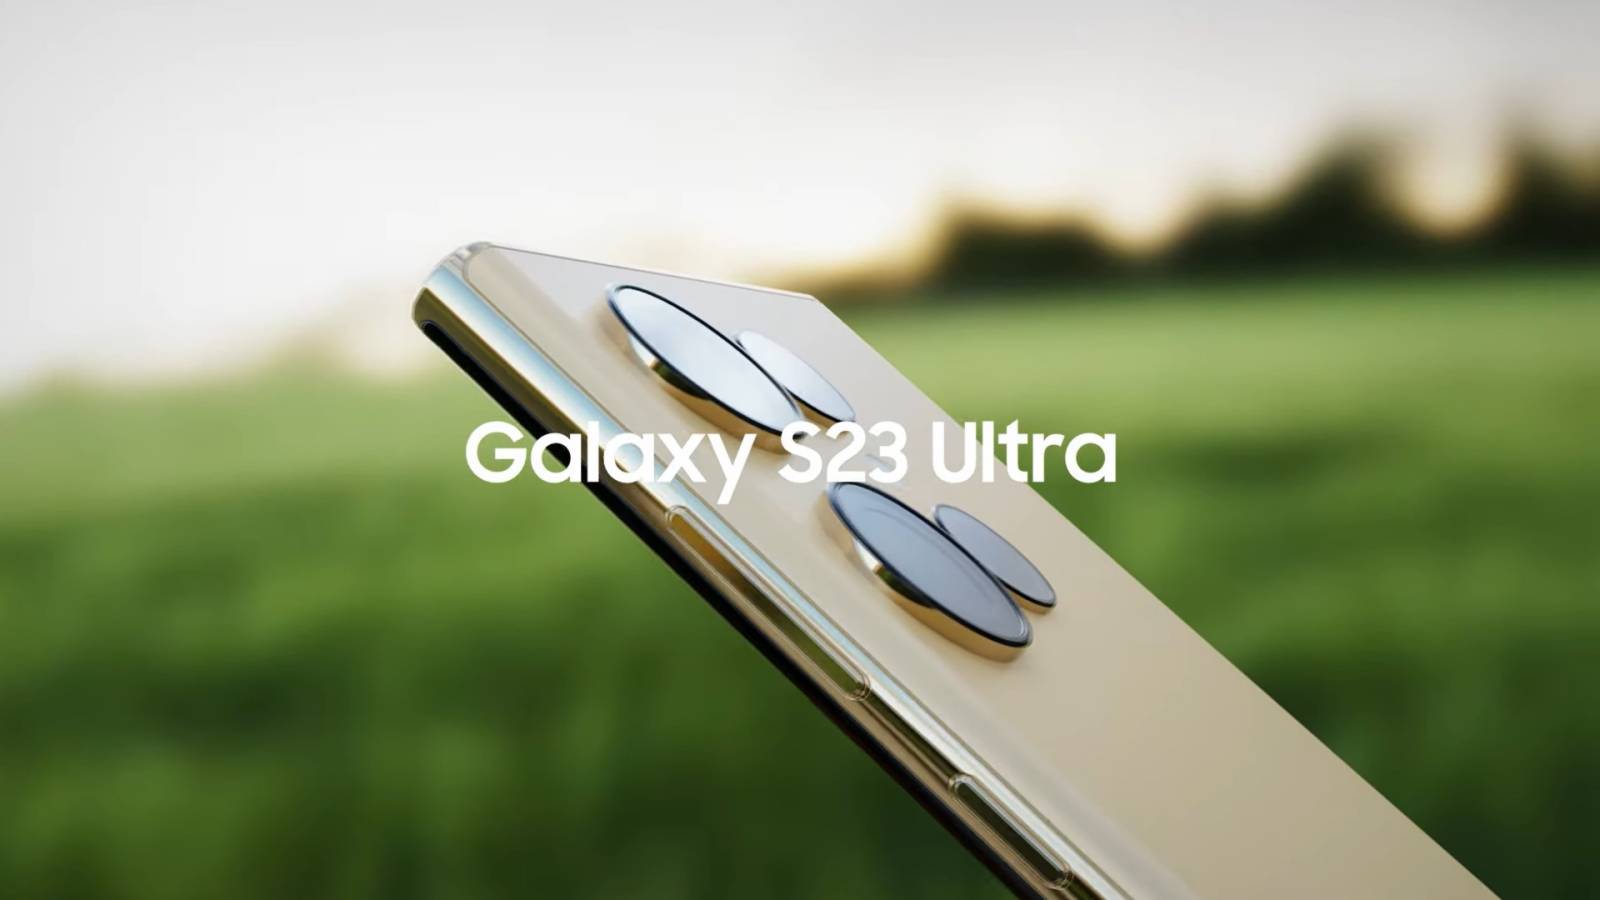 Samsung GALAXY S23 bateria specificatiile confirmate oficial